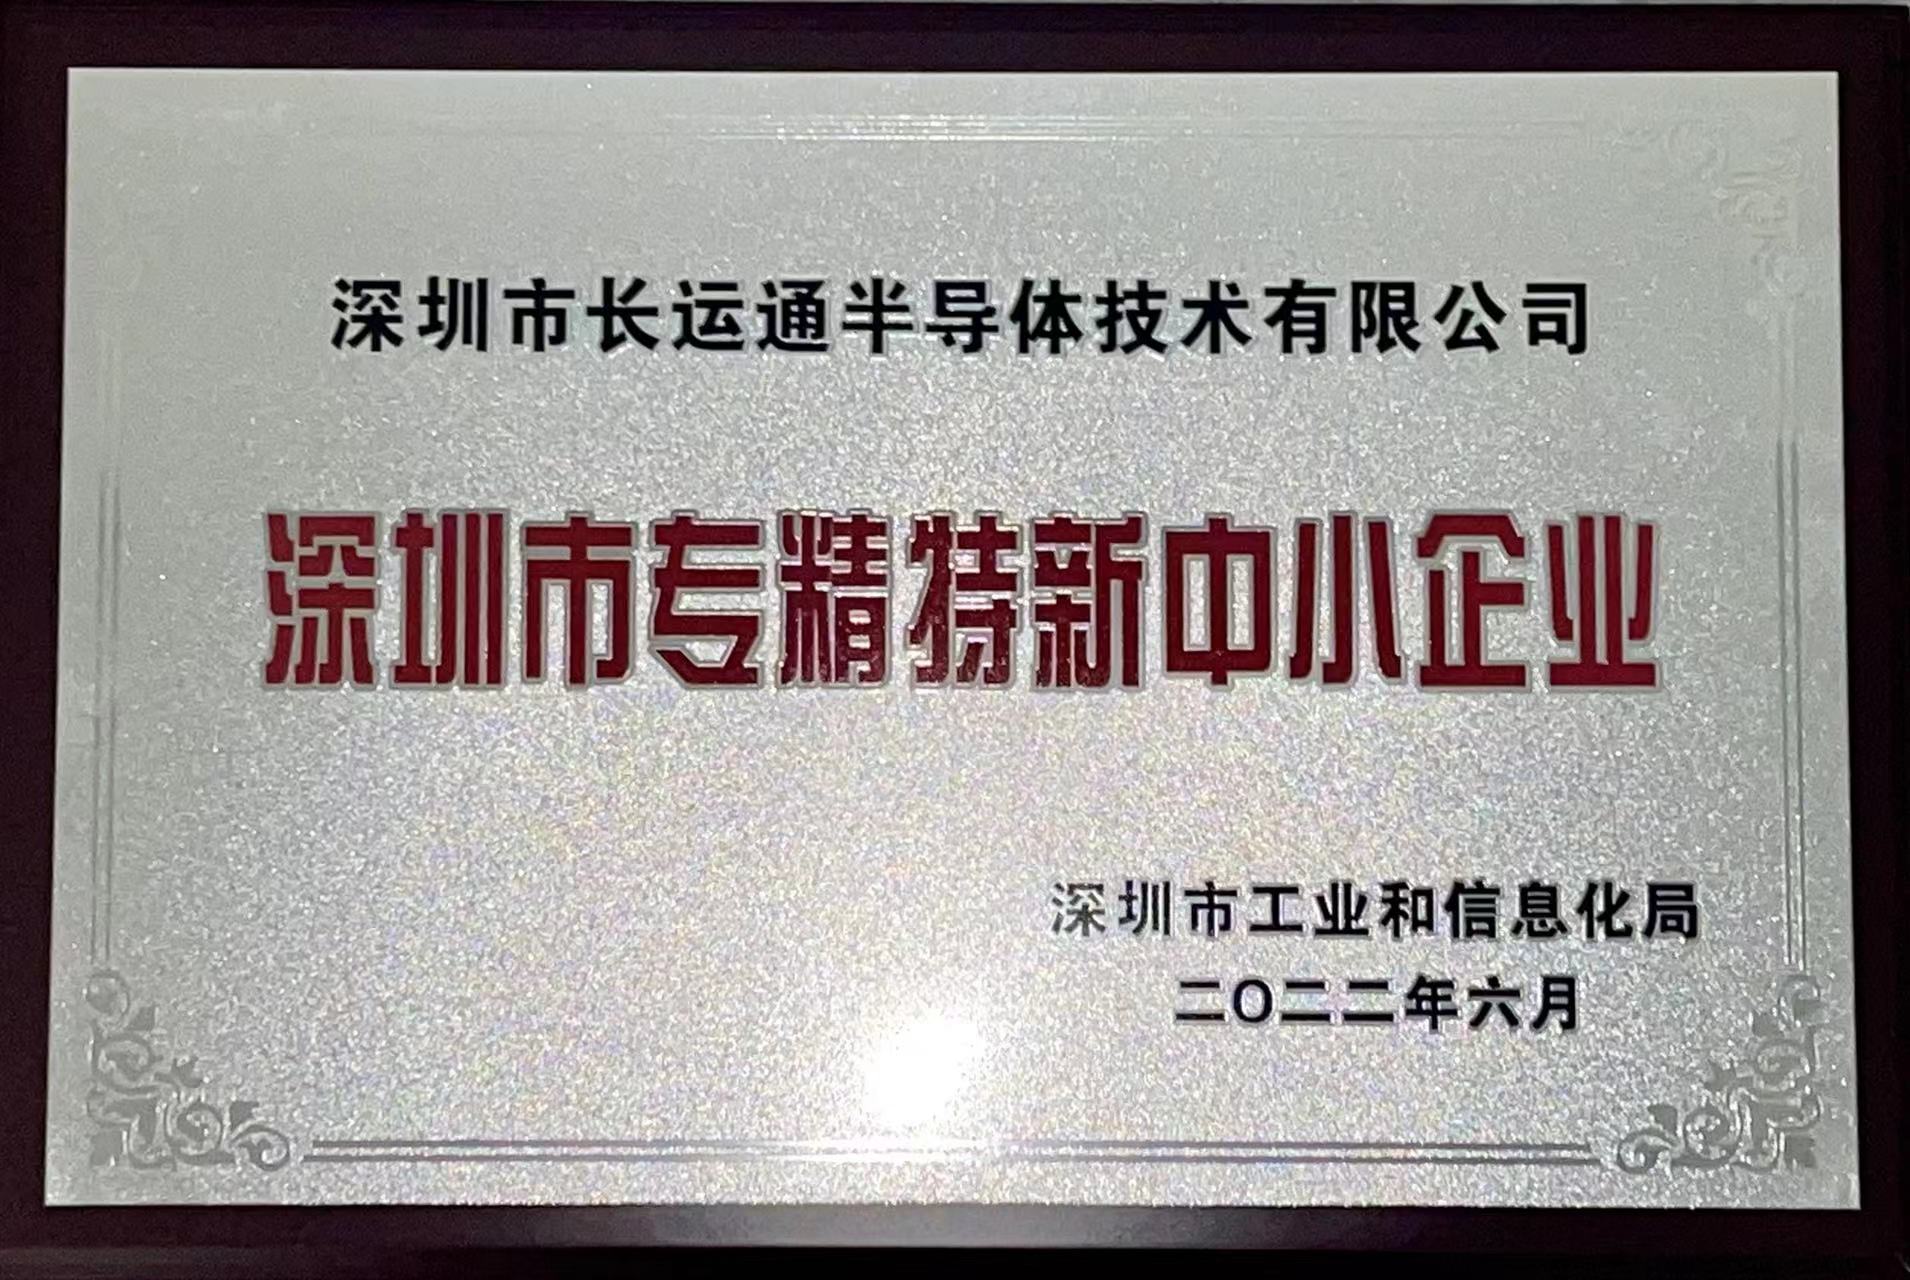 热烈祝贺我司荣获“深圳市专精特新中小企业” 认证